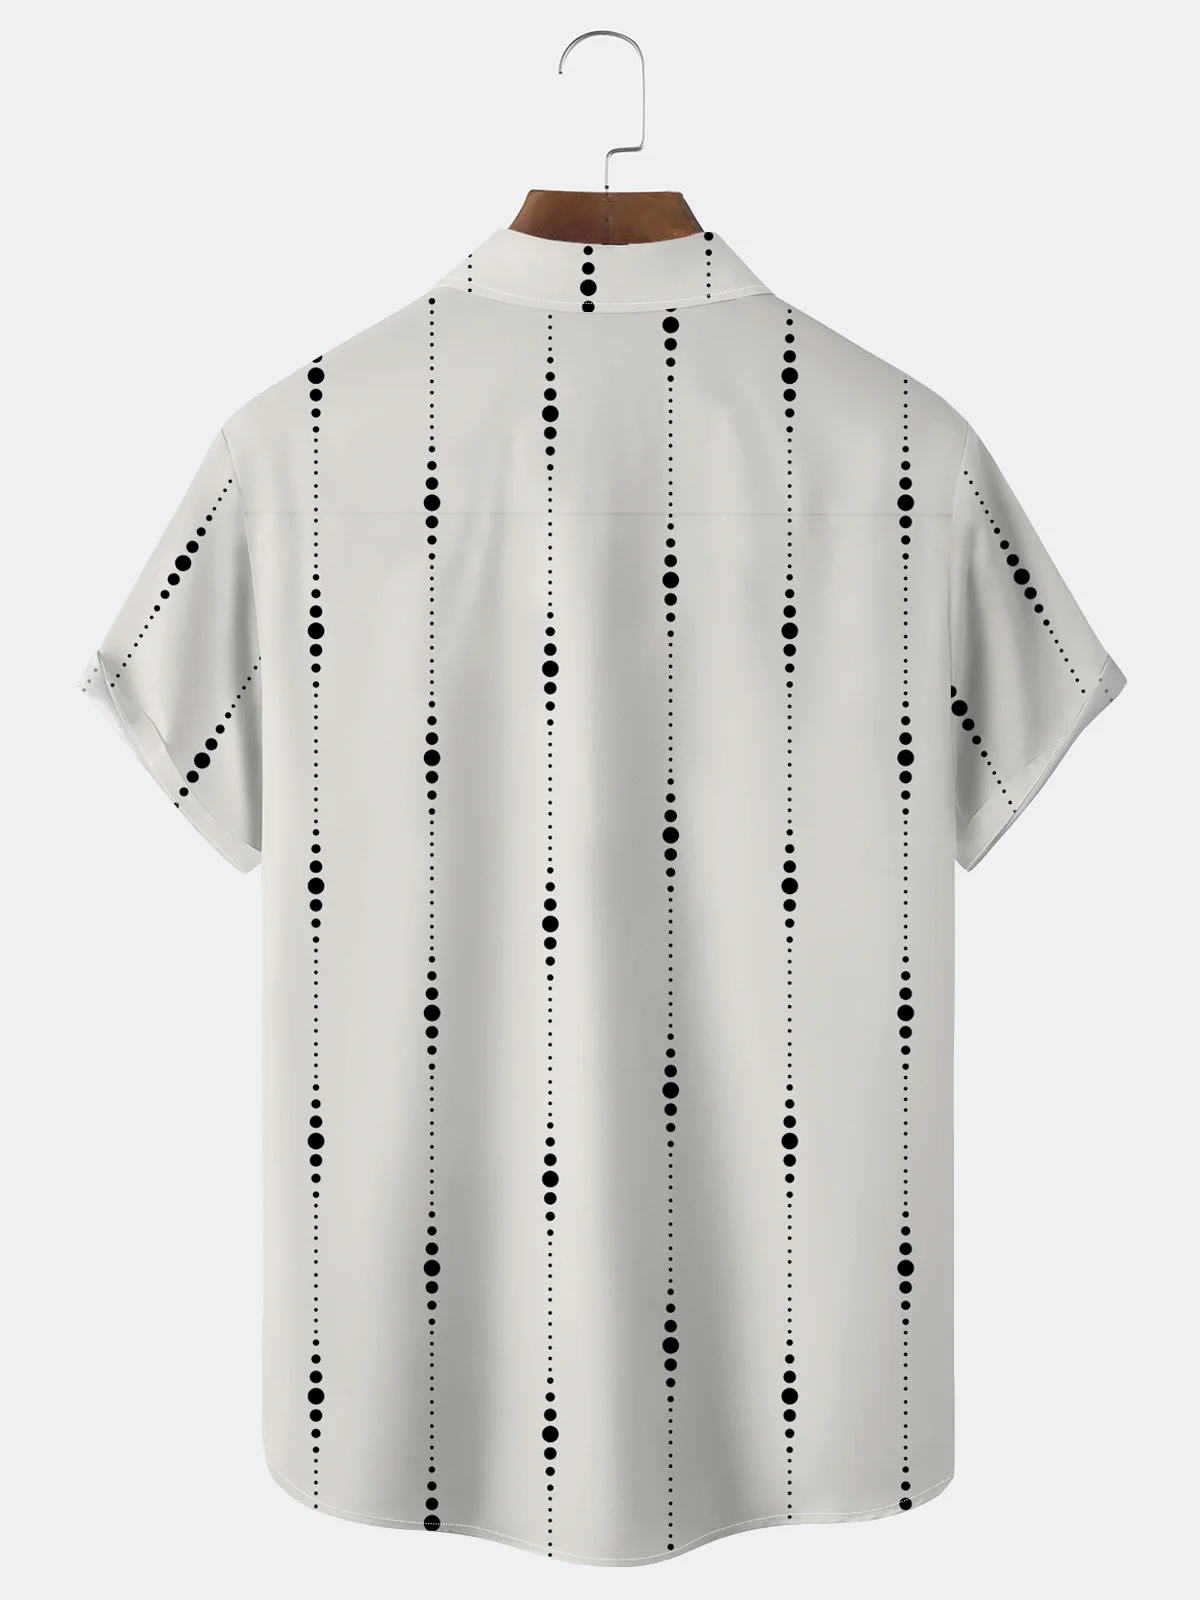 Royaura® Retro Holiday Off White Men's Shirt Polka Dots Art Breathable Comfort Pocket Camp Shirt Big Tall